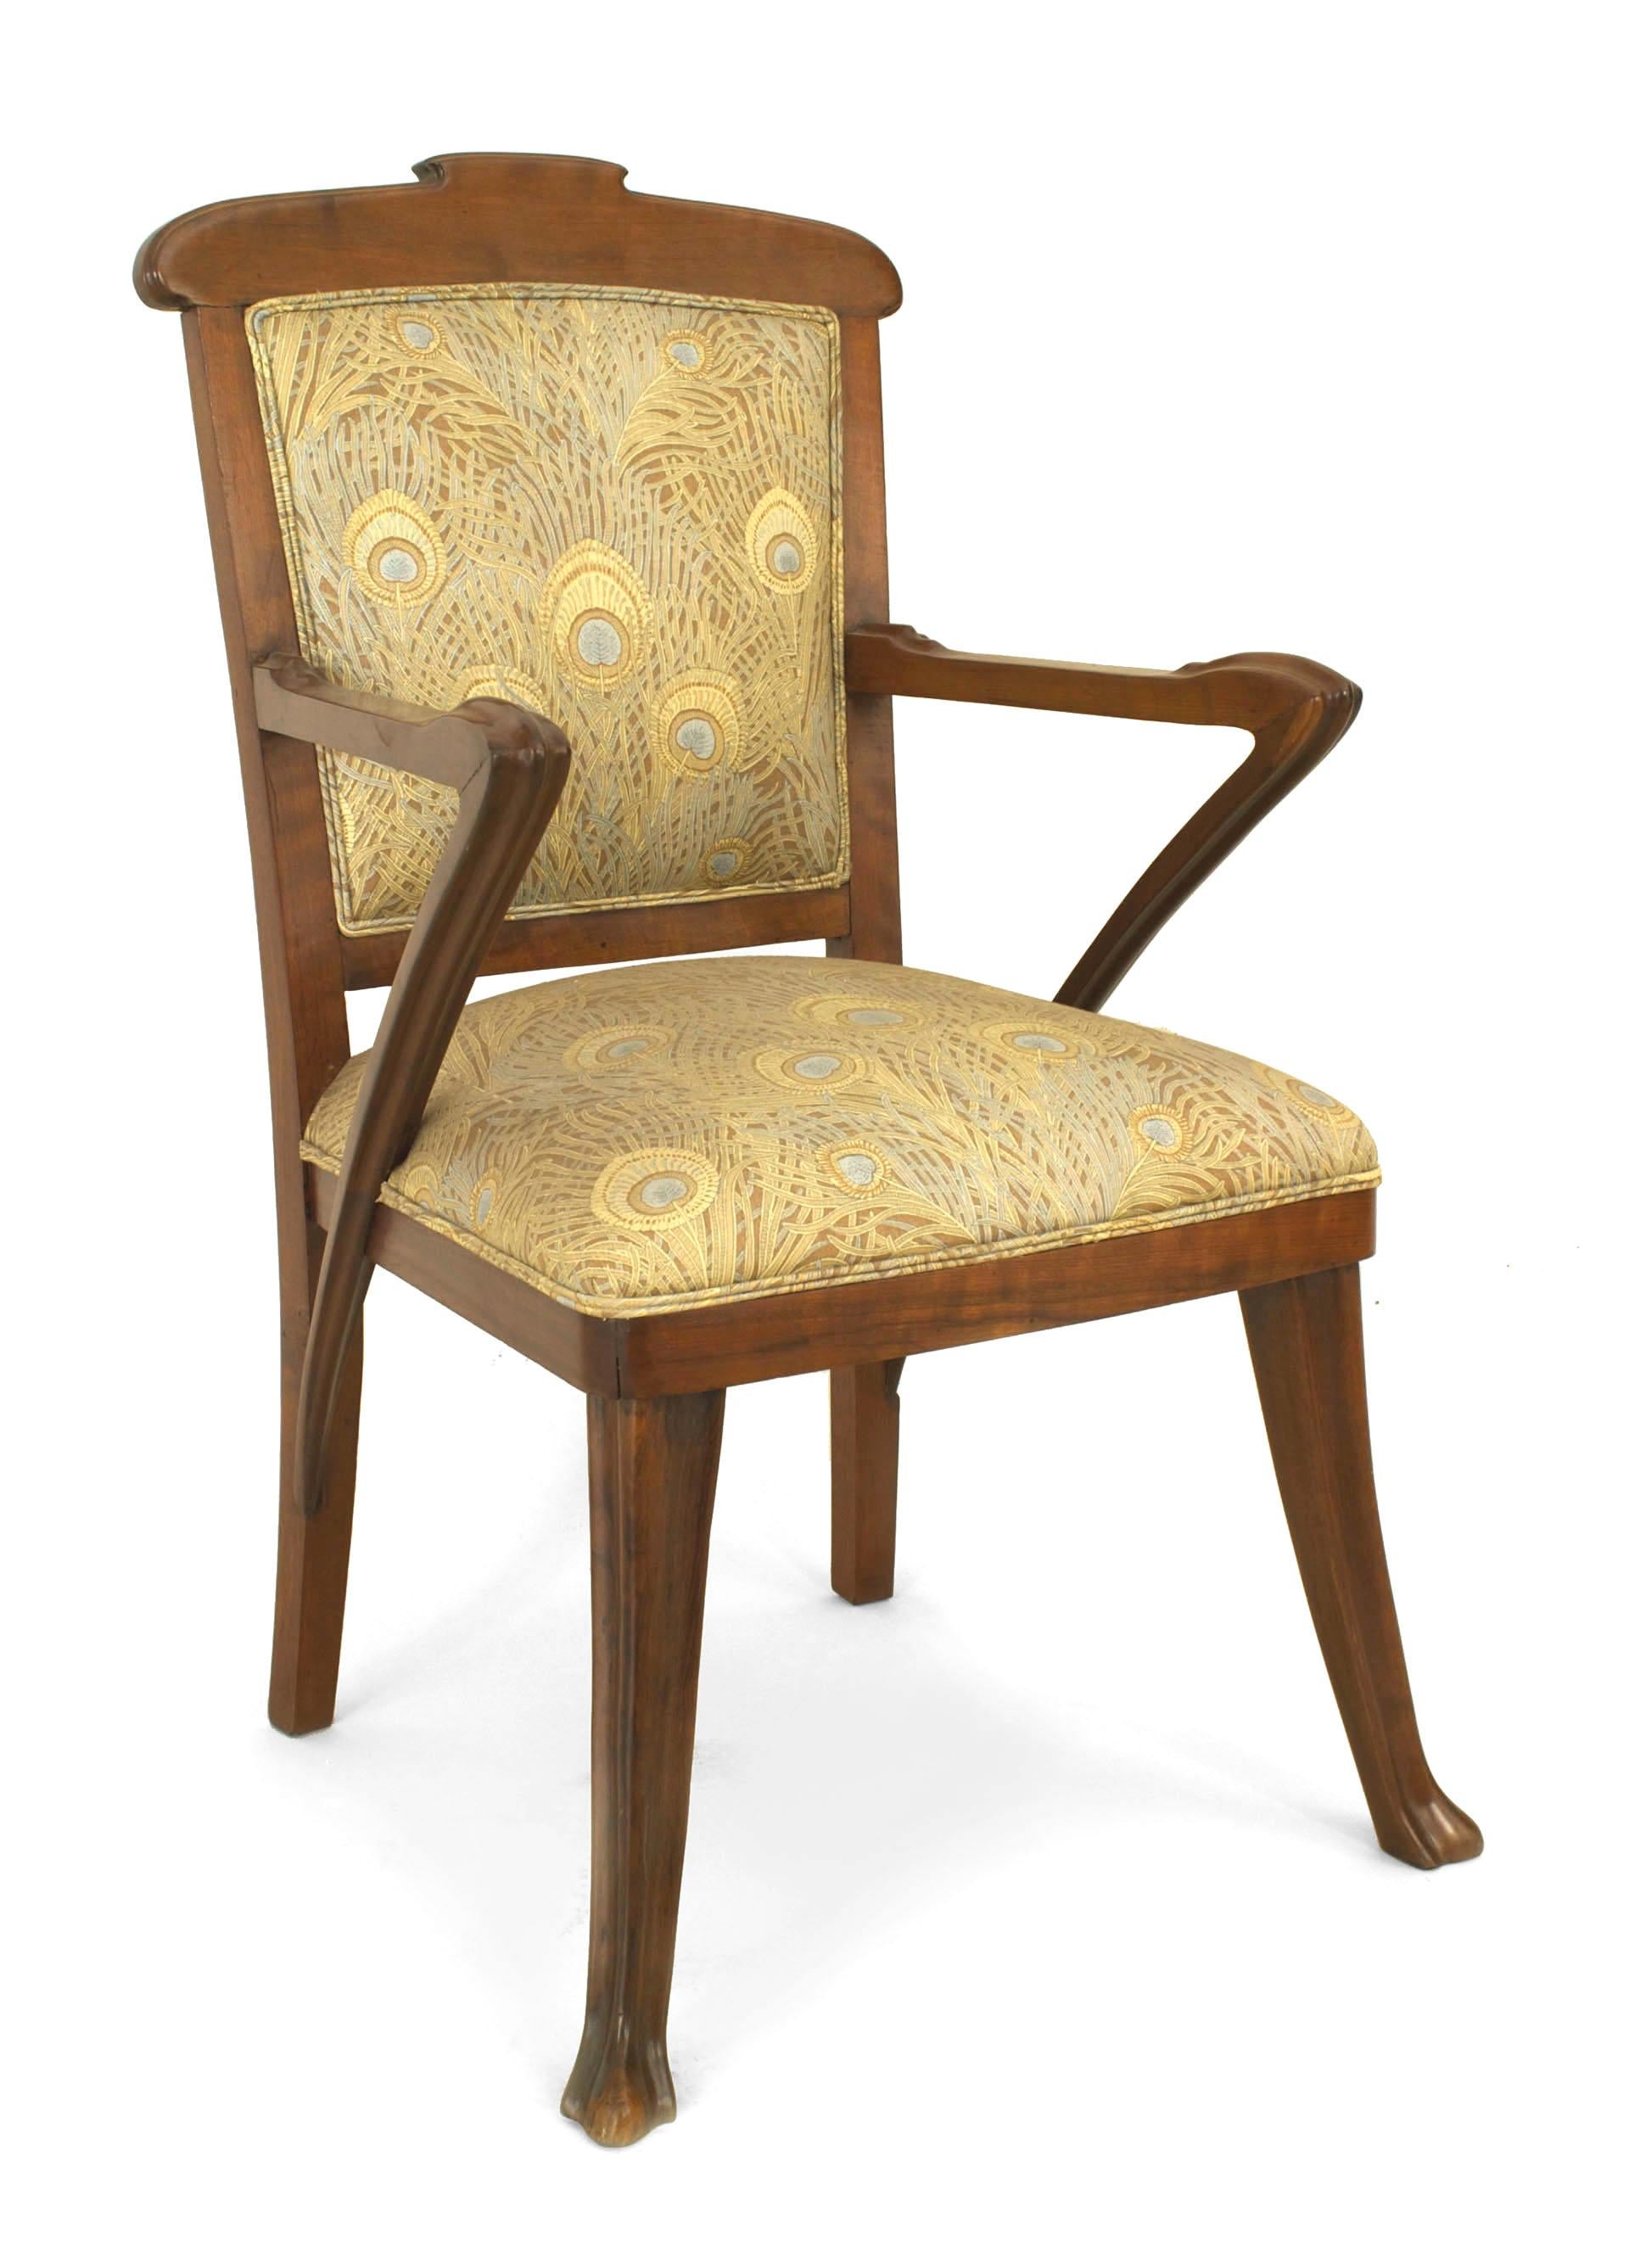 Satz von 4 offenen französischen Jugendstil-Sesseln aus Nussbaumholz mit gepolsterten Sitzen und Rückenlehnen im Pfauenfedermuster. (PREIS ALS SET)
